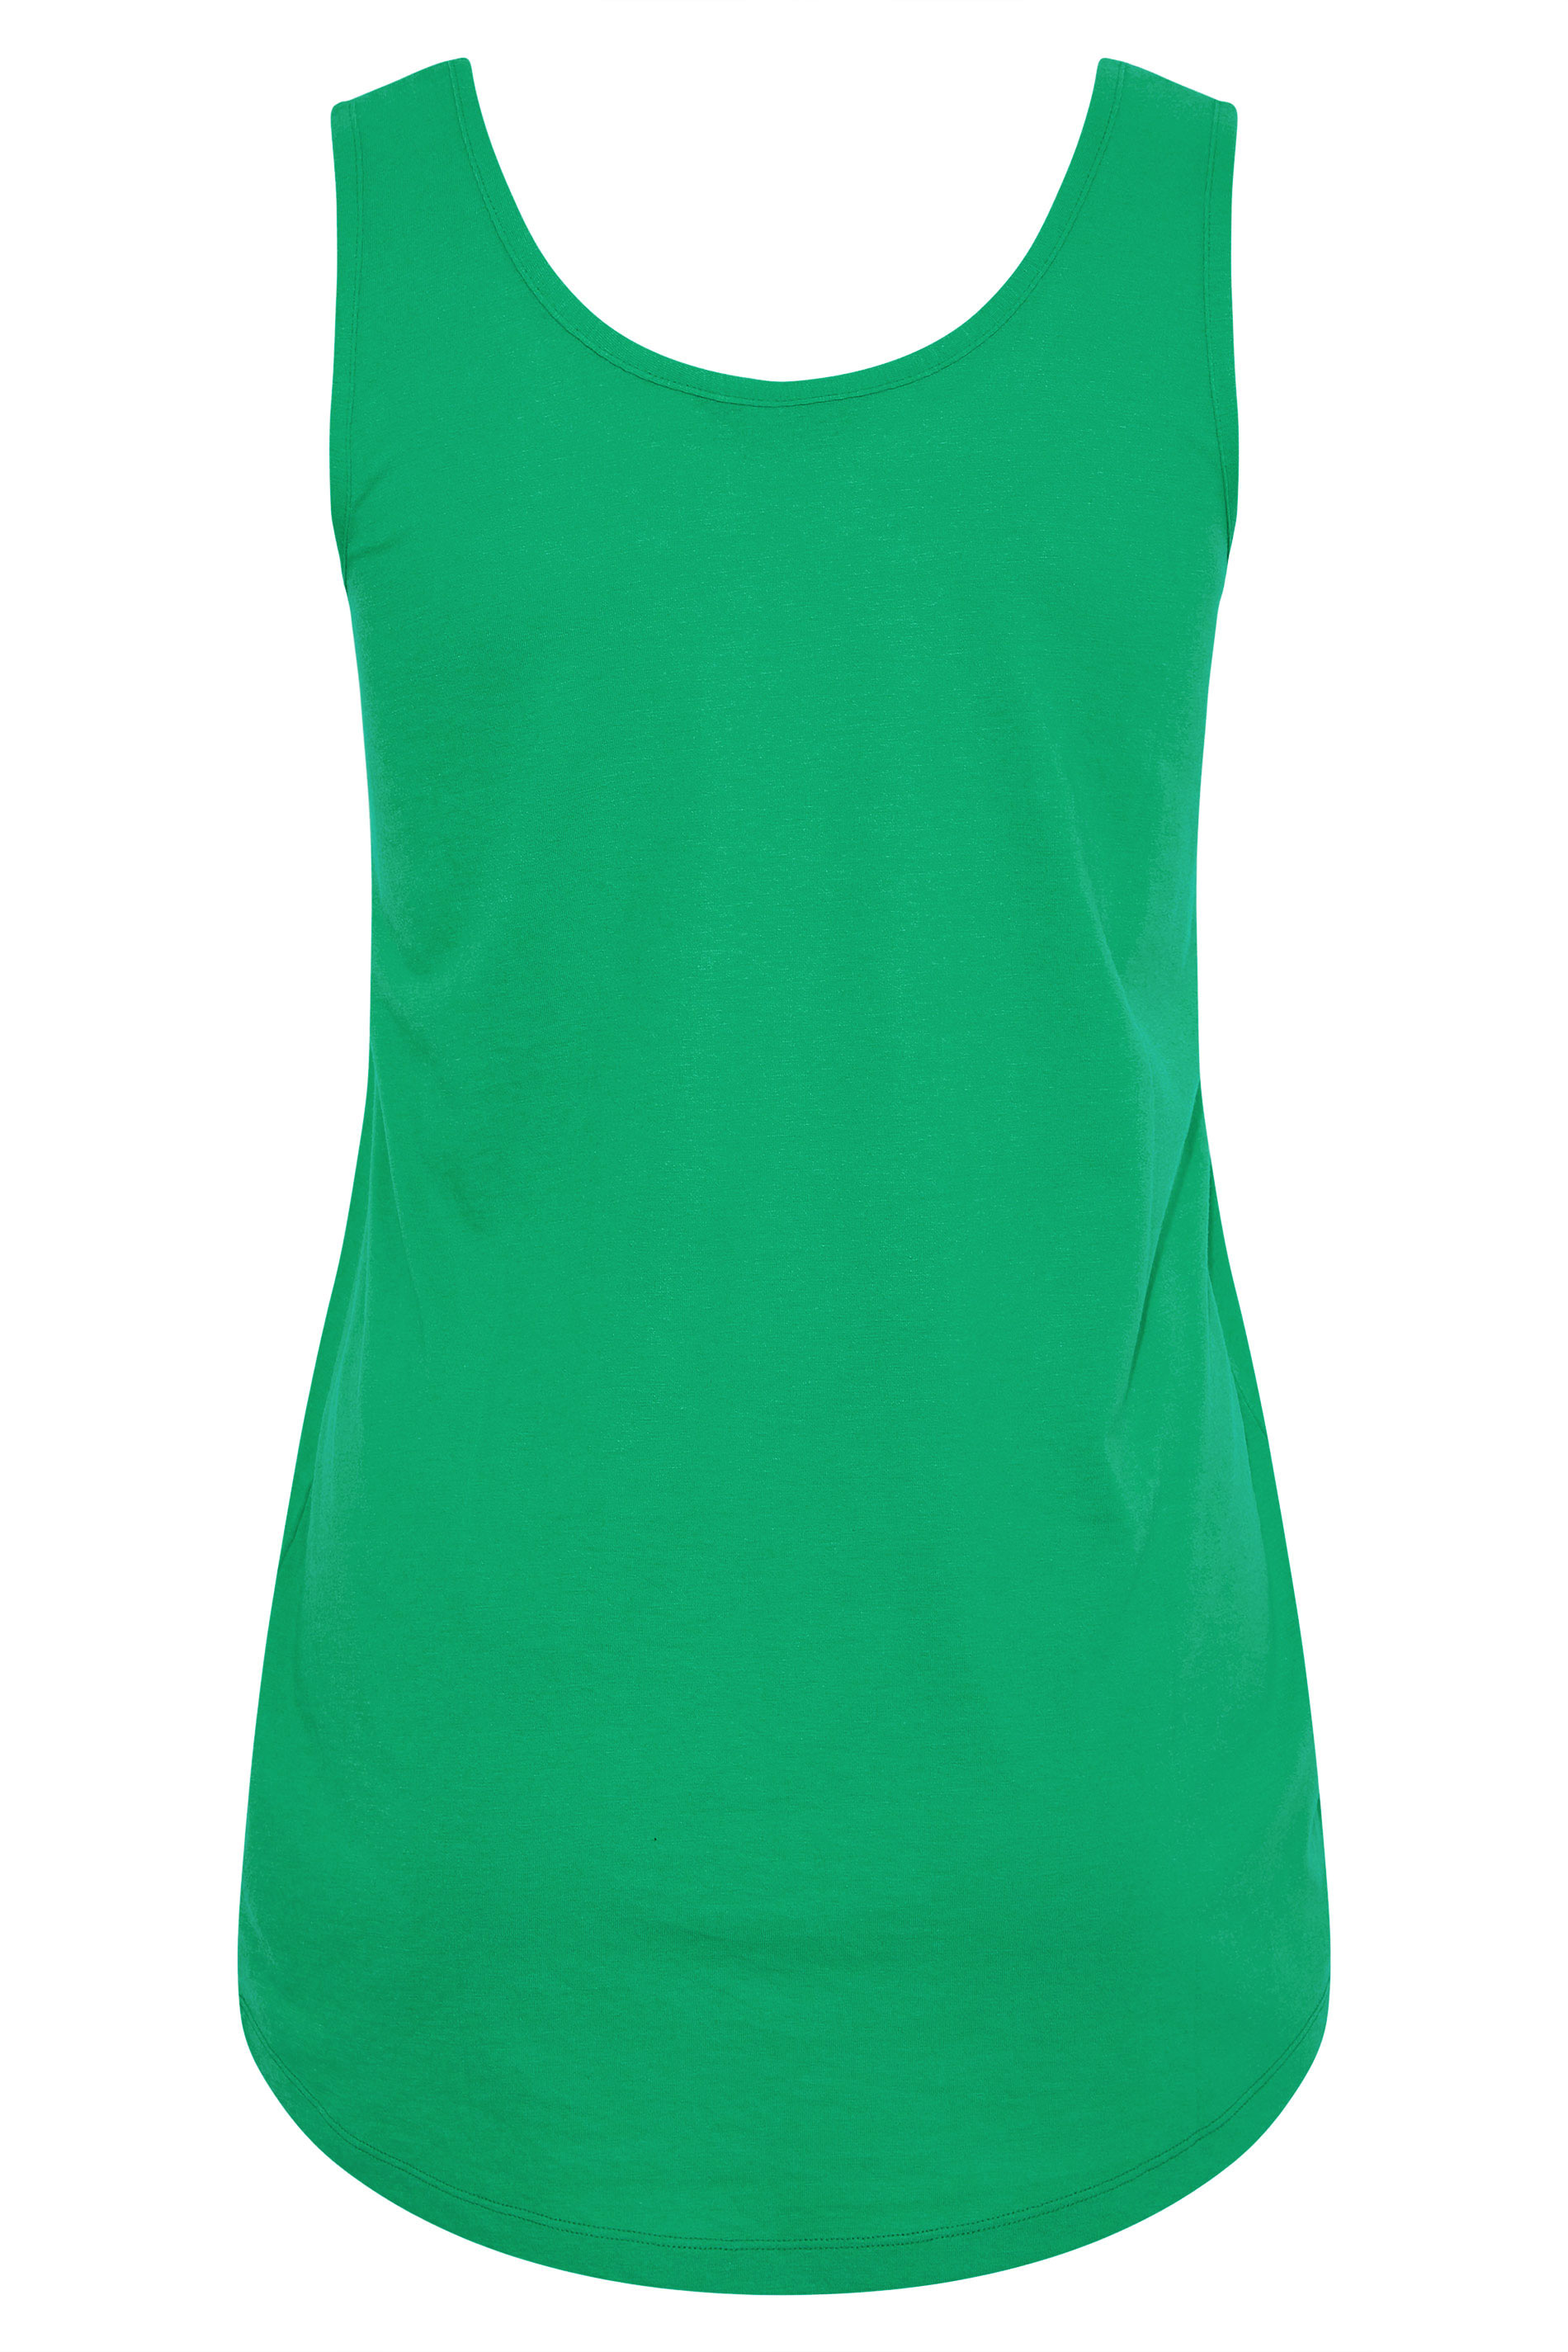 Grande taille  Tops Grande taille  T-Shirts Basiques & Débardeurs | Débardeur Vert en Jersey - TH68578